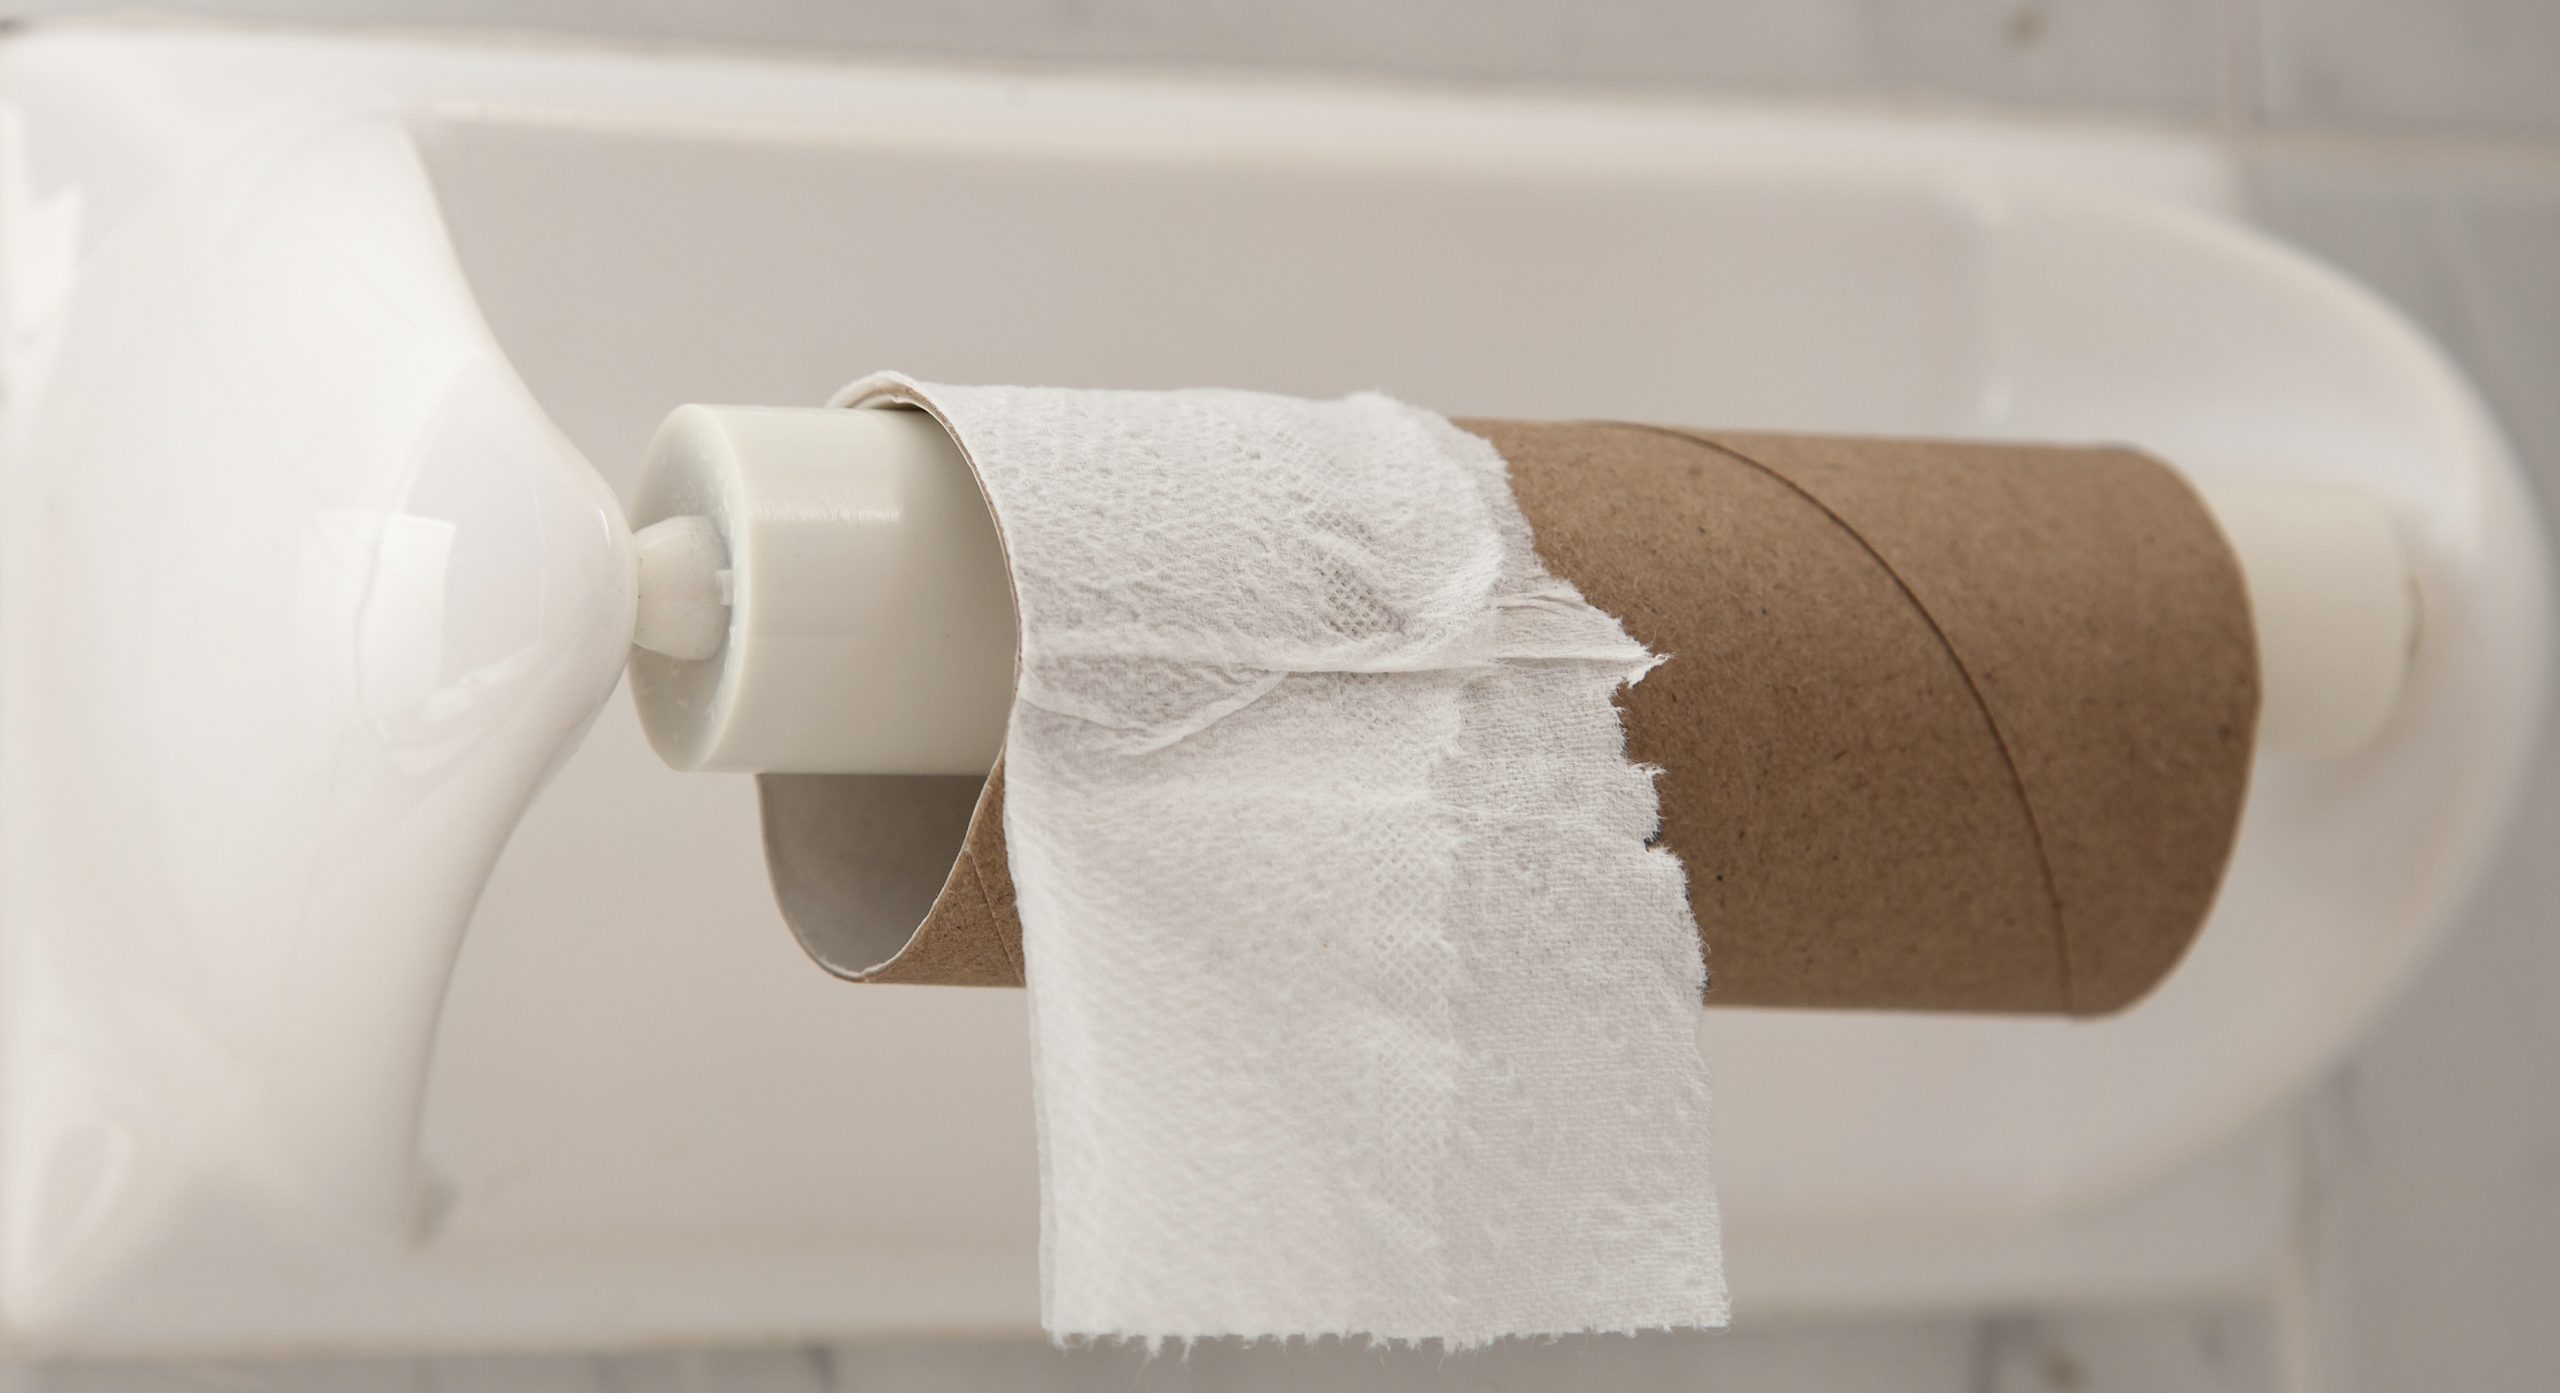 Туалетная бумага в унитаз можно. Закончилась туалетная бумага. Заканчивающийся рулон туалетной бумаги. Нет туалетной бумаги. Использованная туалетная бумага.